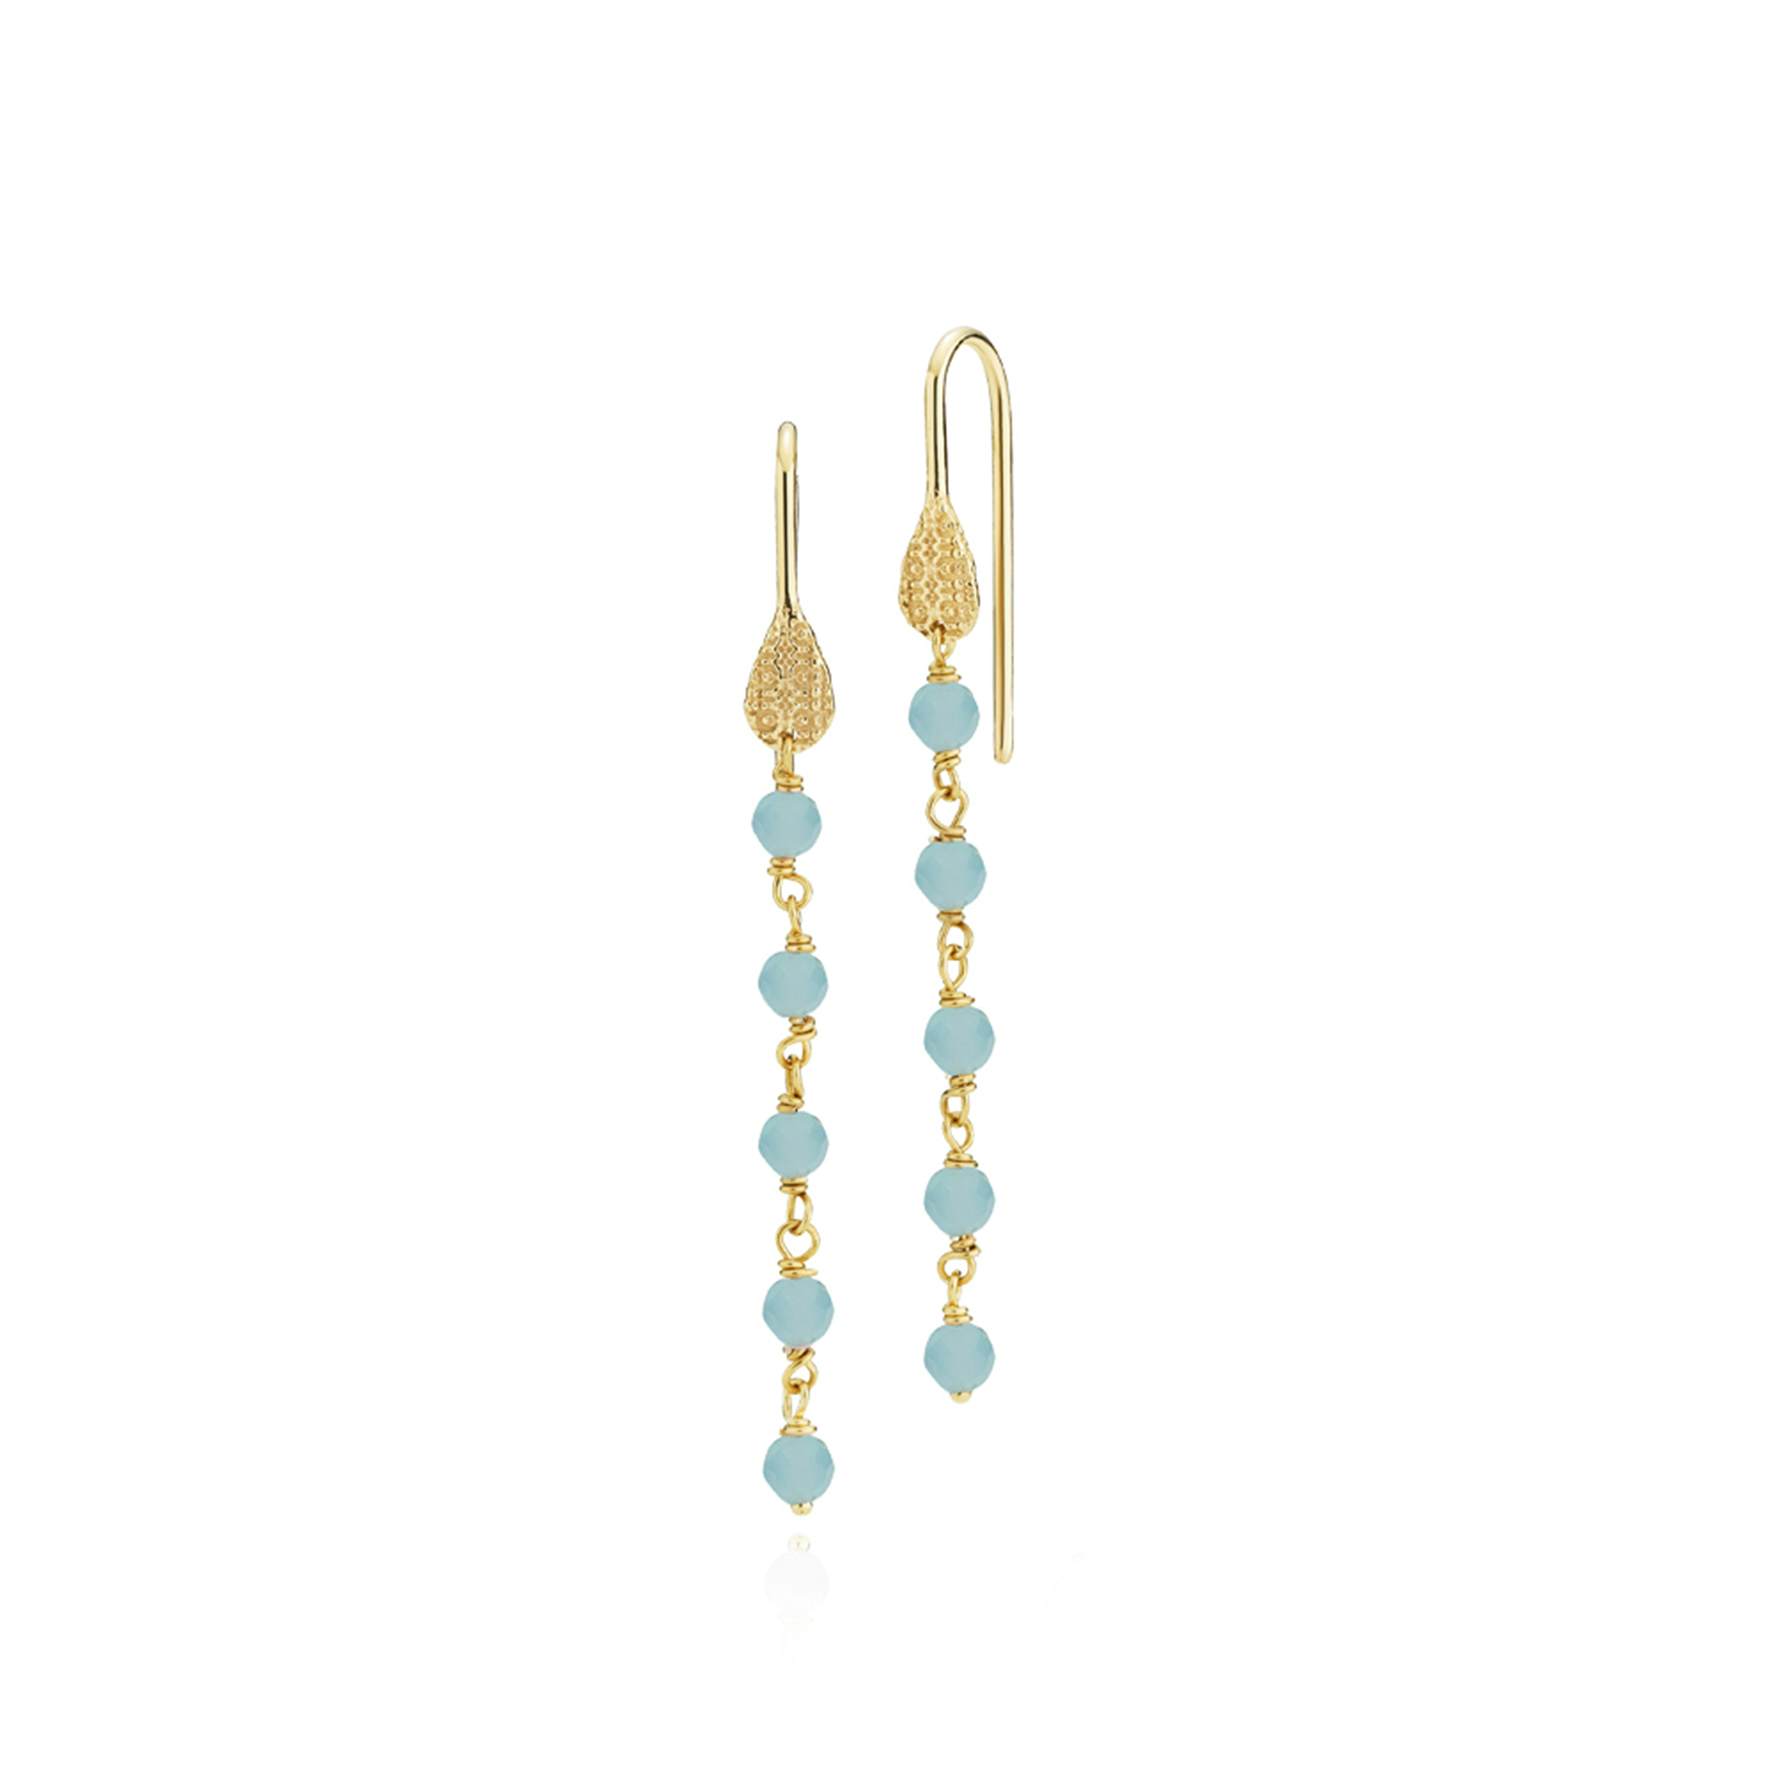 Boheme Long Blue Earrings from Sistie in Goldplated-Silver Sterling 925